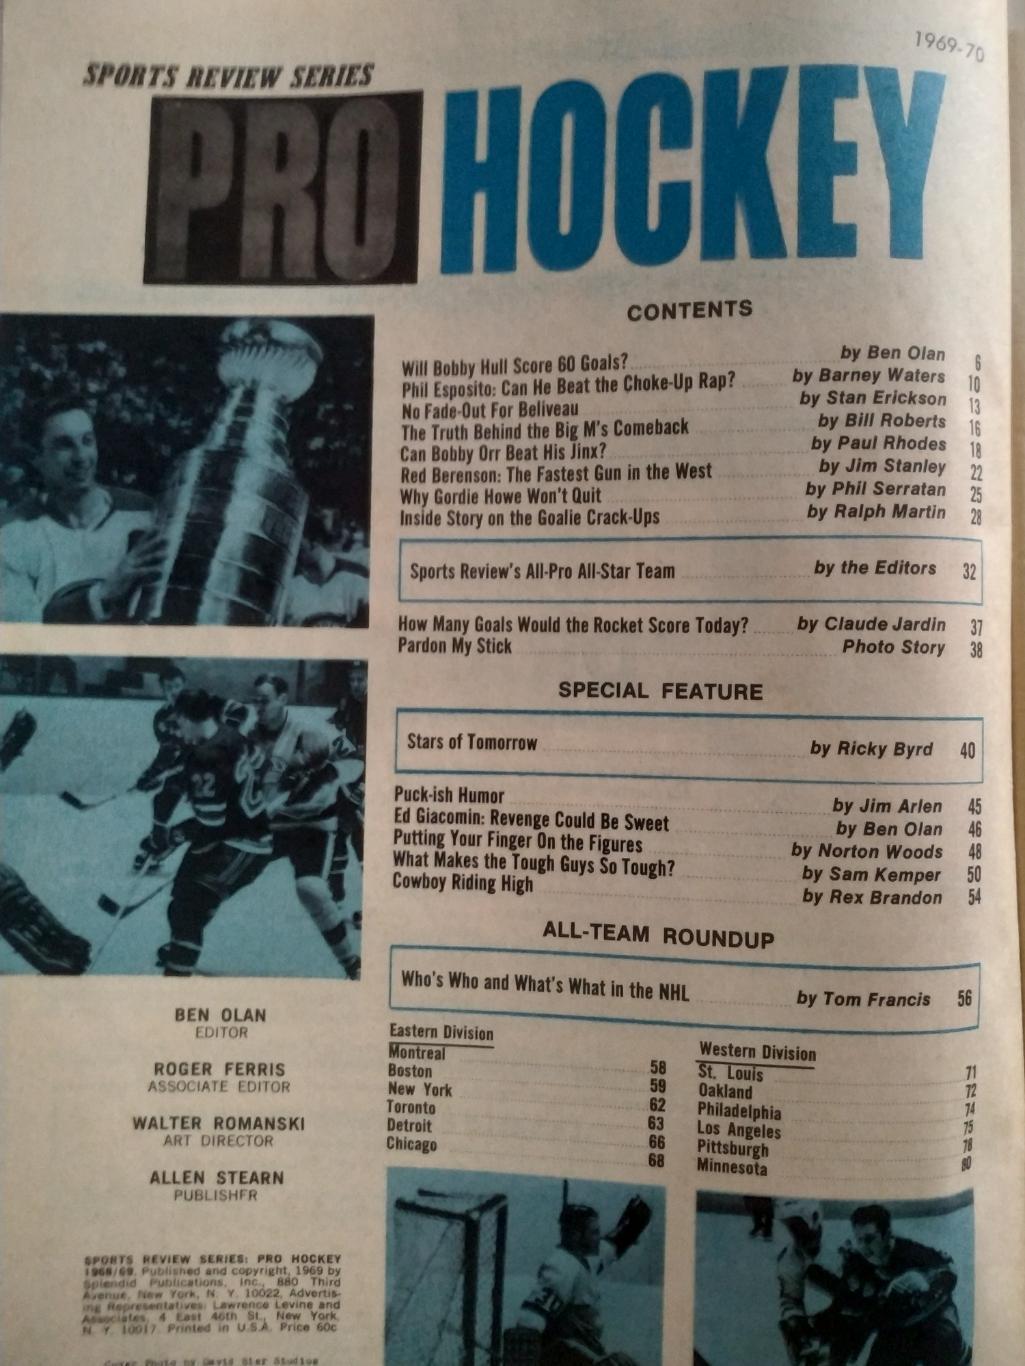 ЖУРНАЛ СПРАВОЧНИК НХЛ СПОРТ РЕВЬЮ ПРО ХОКЕЕЙ 1969-70 NHL SPORT REVIEW PRO HOCKEY 1